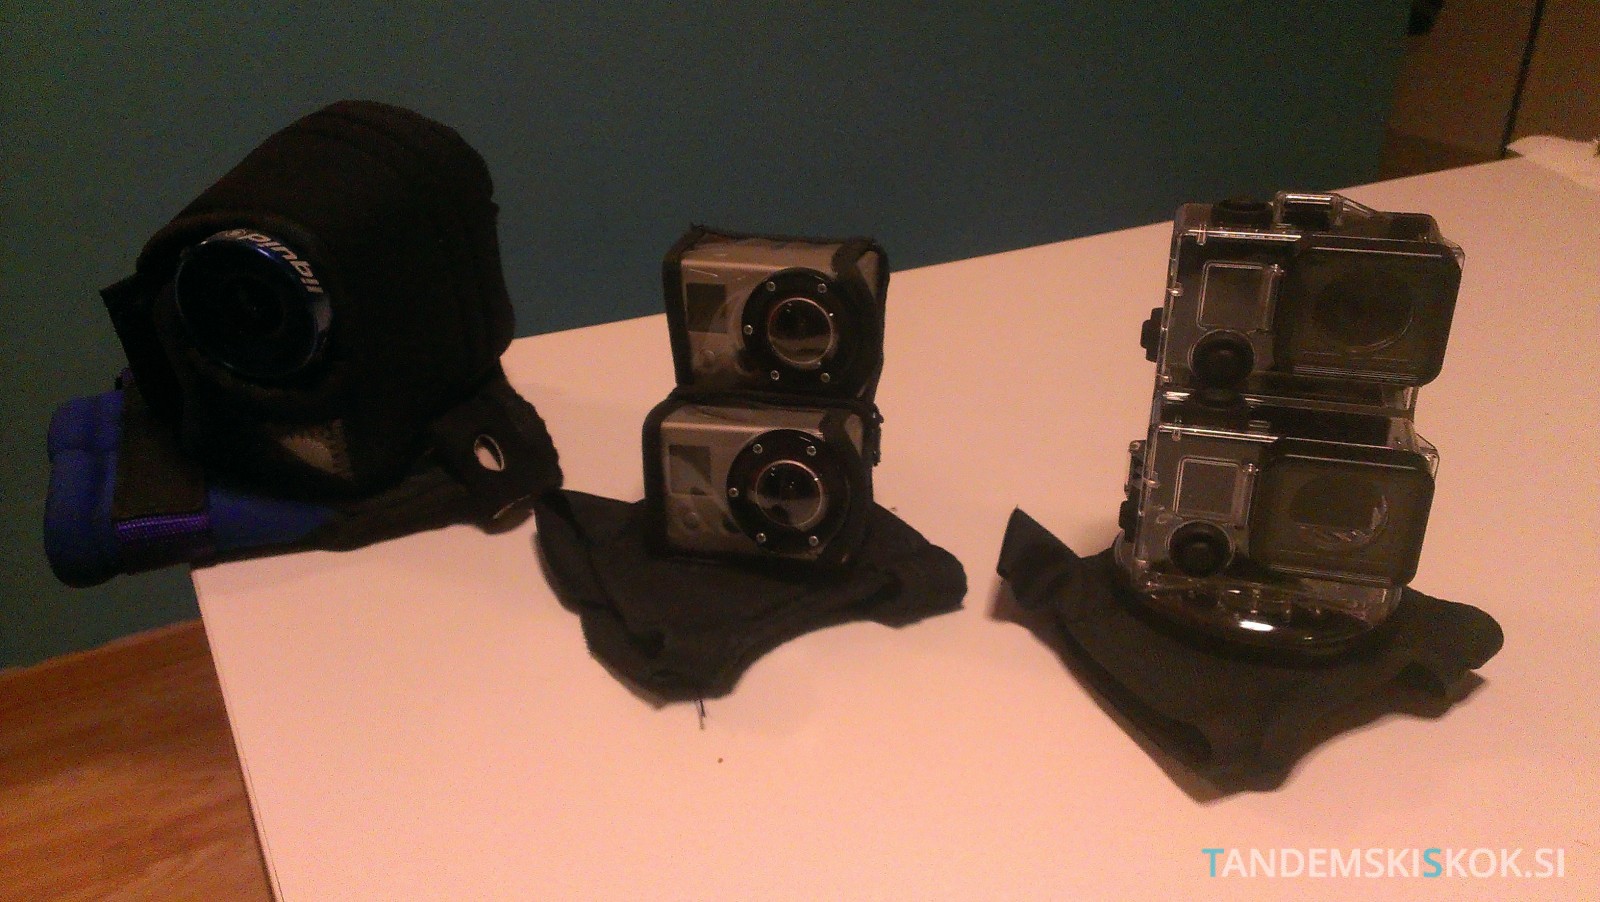 Primerjava kamer za snemanje skoka s padalom v posebni rokavici za tandemske skoke